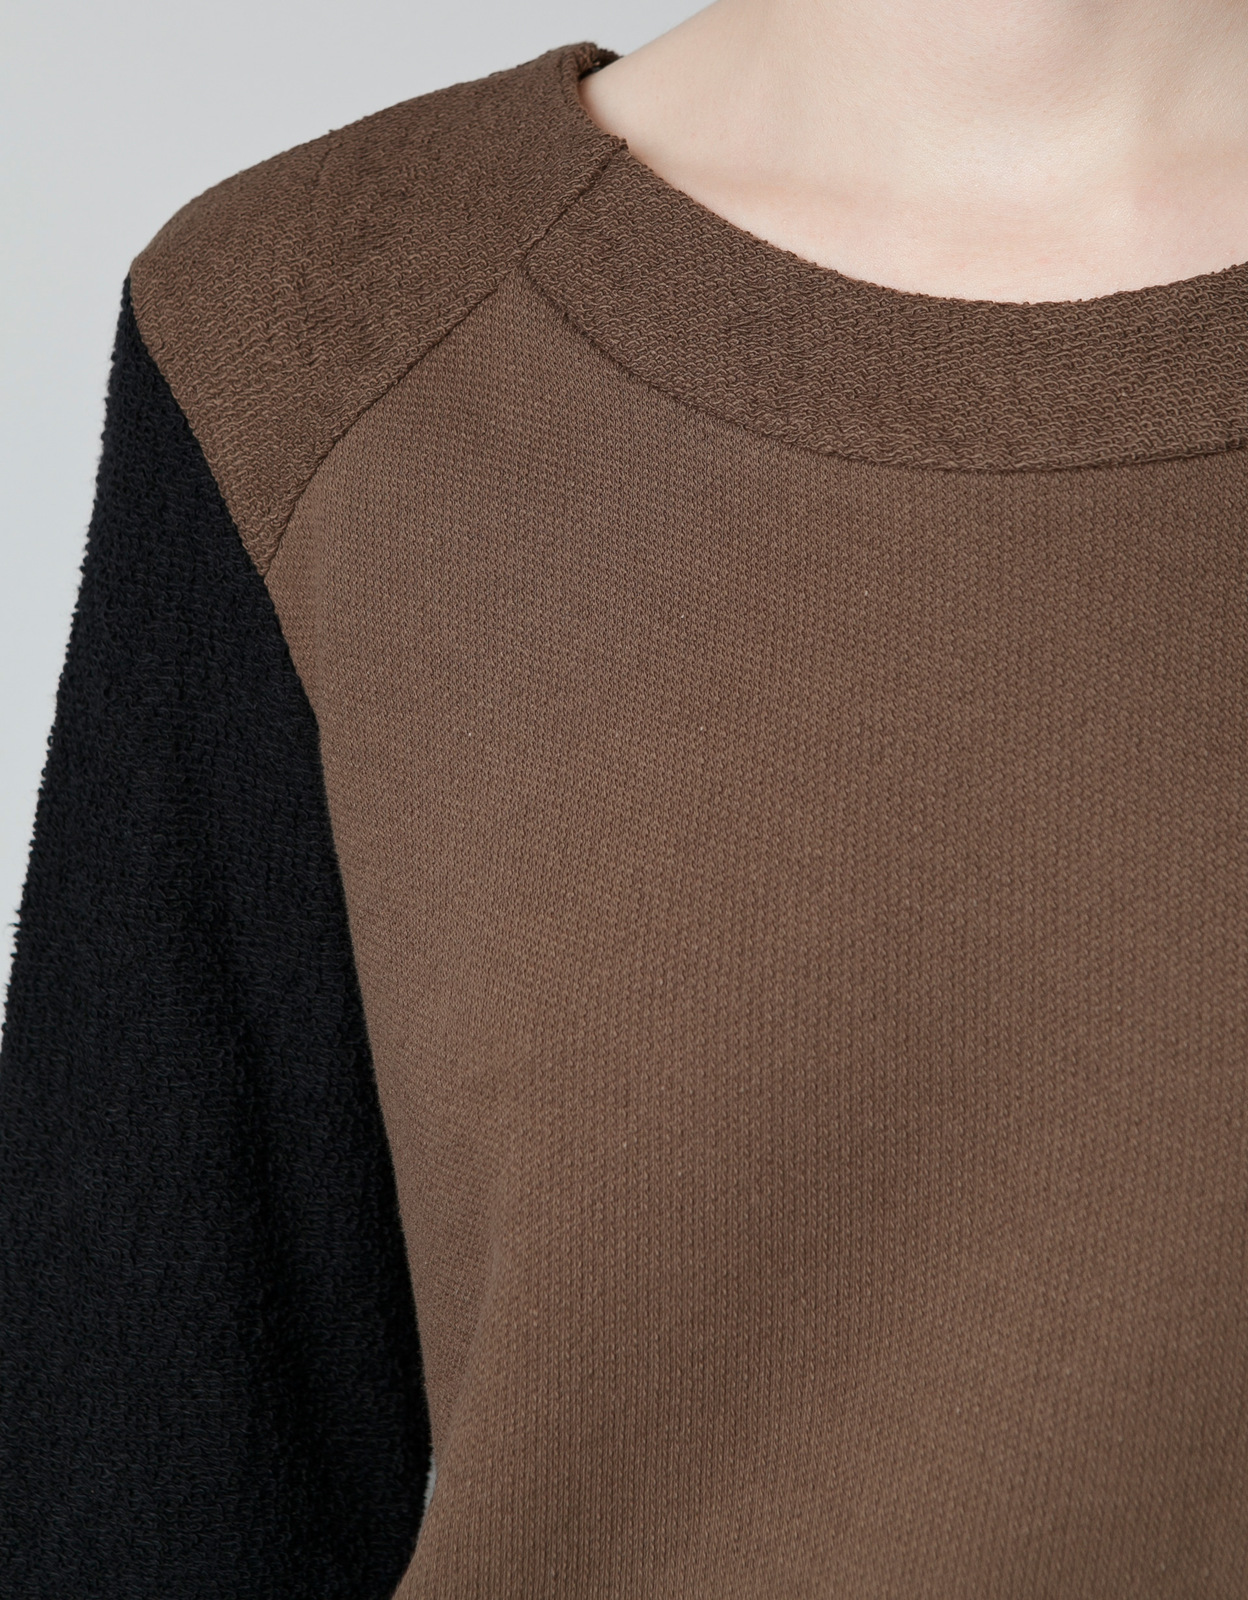 Zara barna-fekete pulóver 2012.10.21 fotója